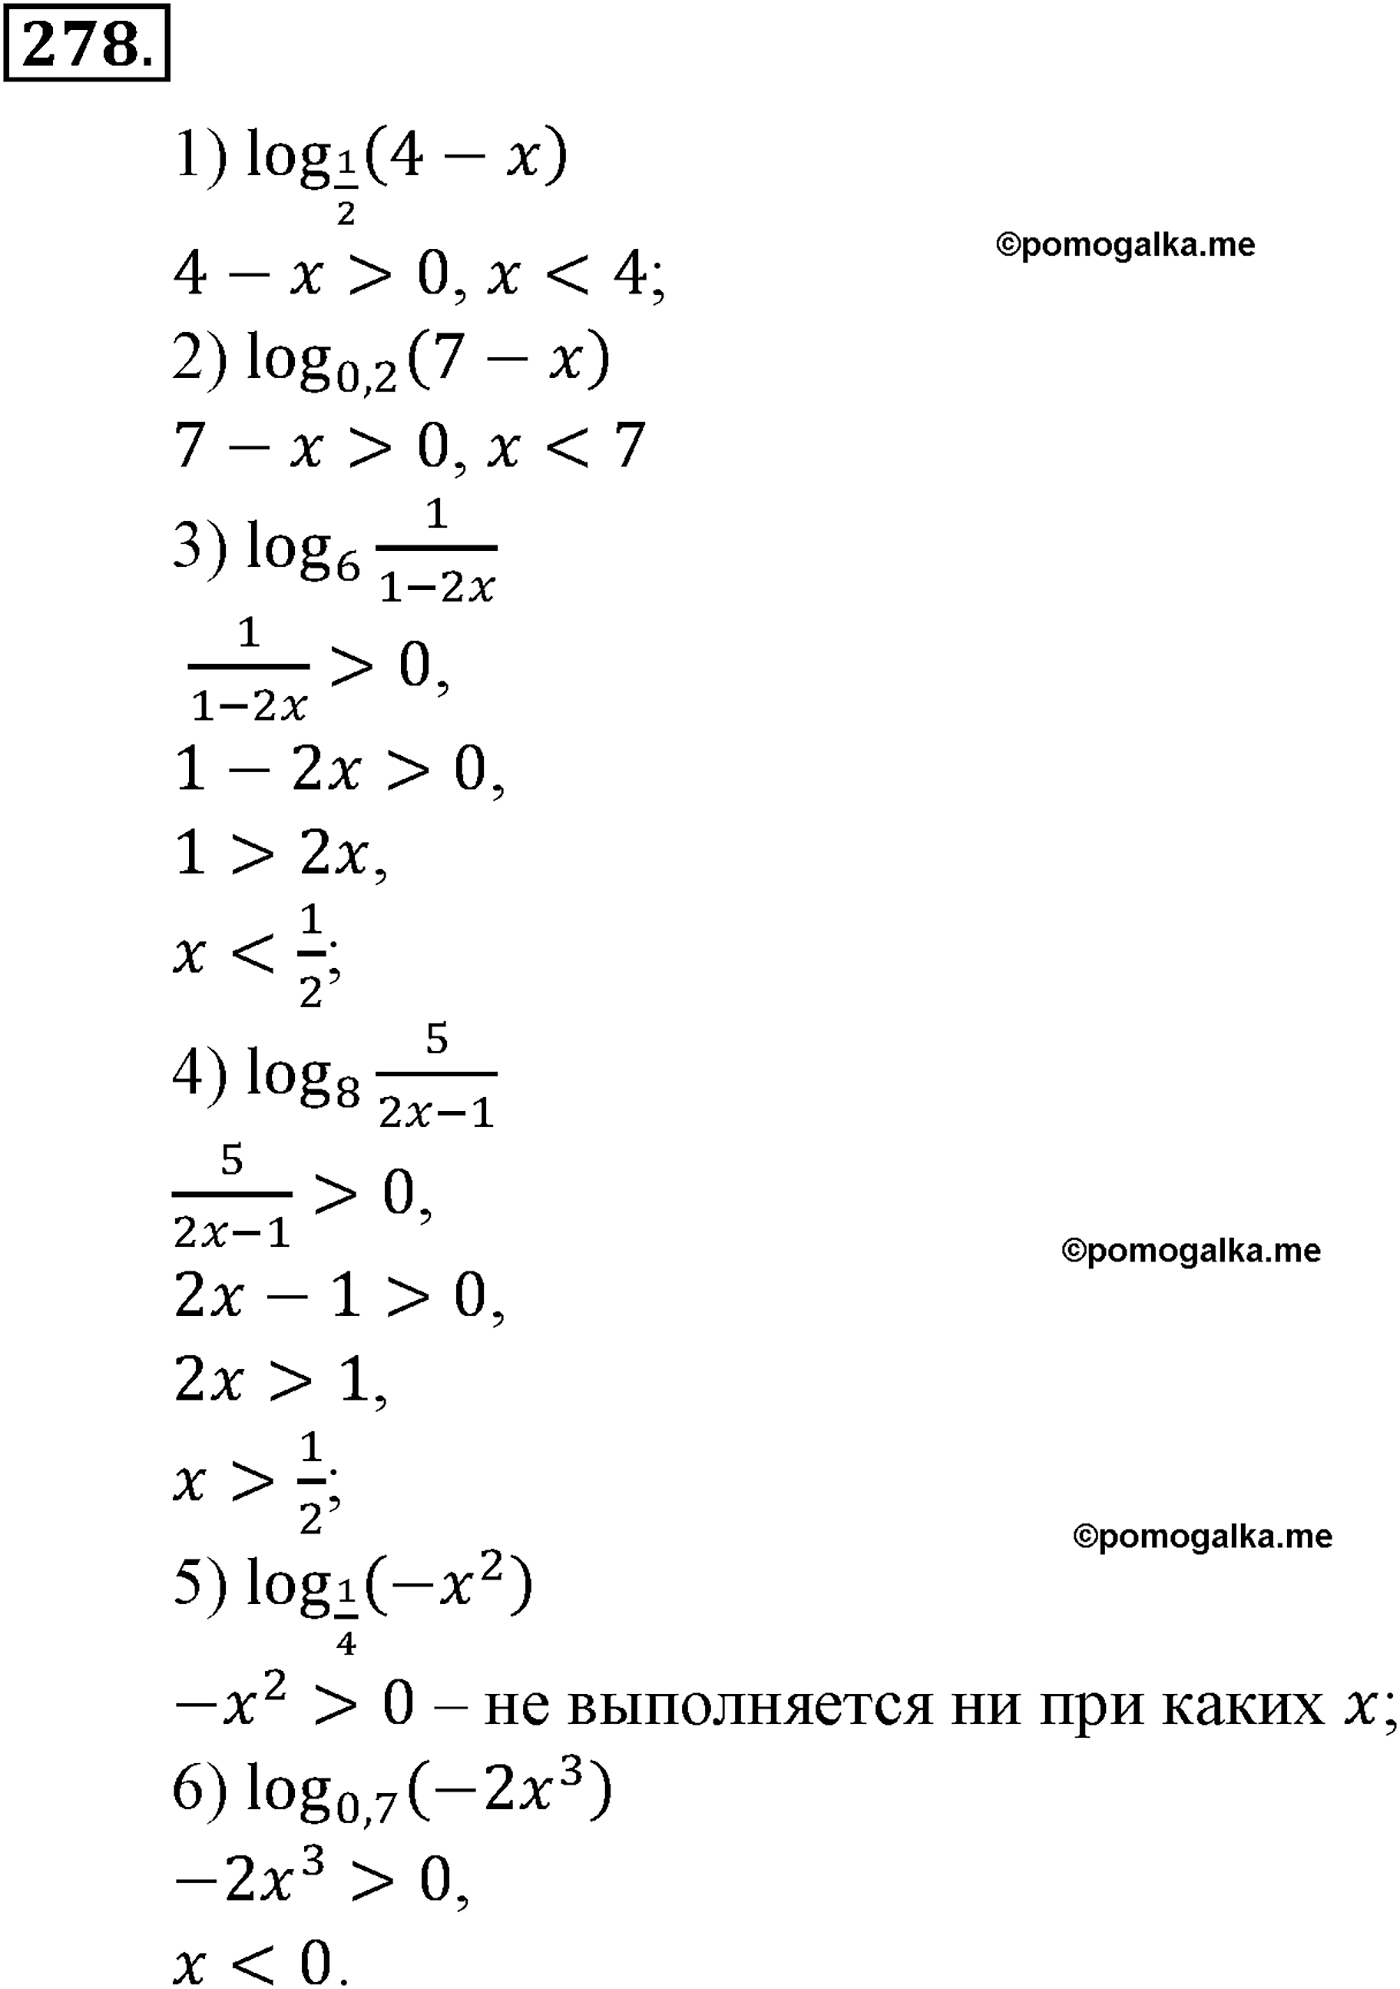 разбор задачи №278 по алгебре за 10-11 класс из учебника Алимова, Колягина